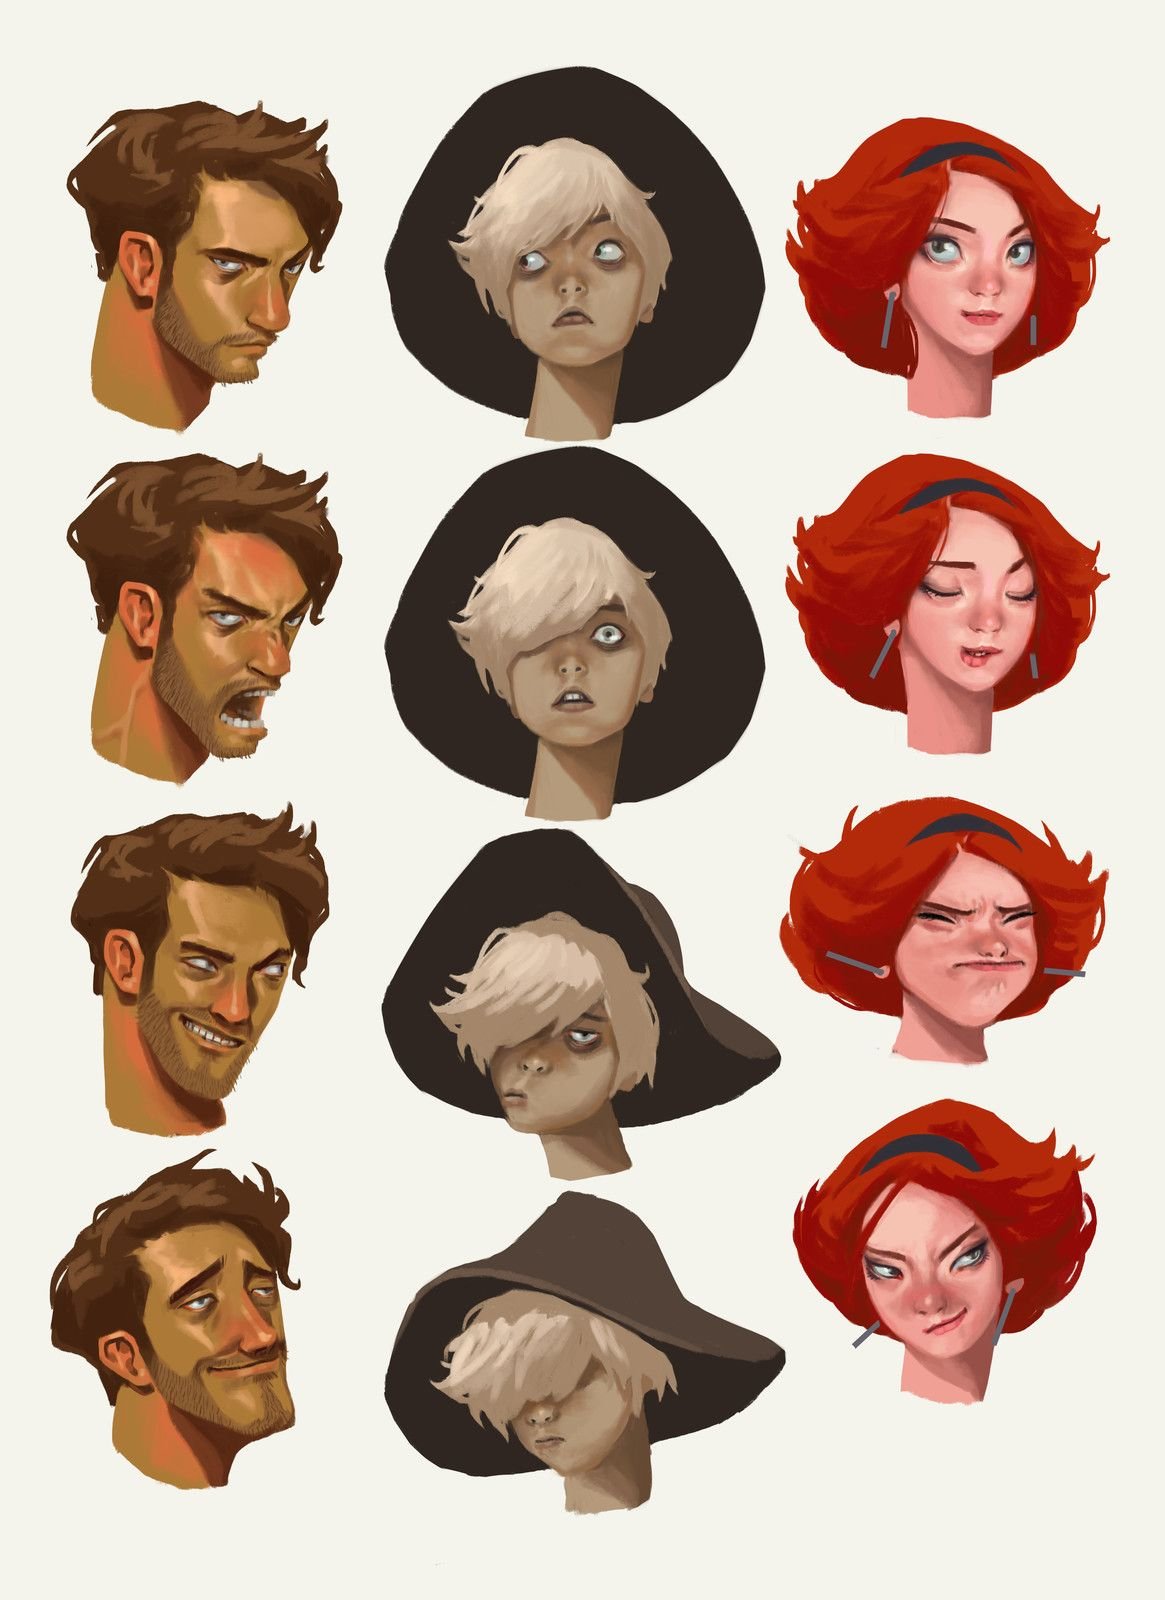 Разные стили рисования персонажей